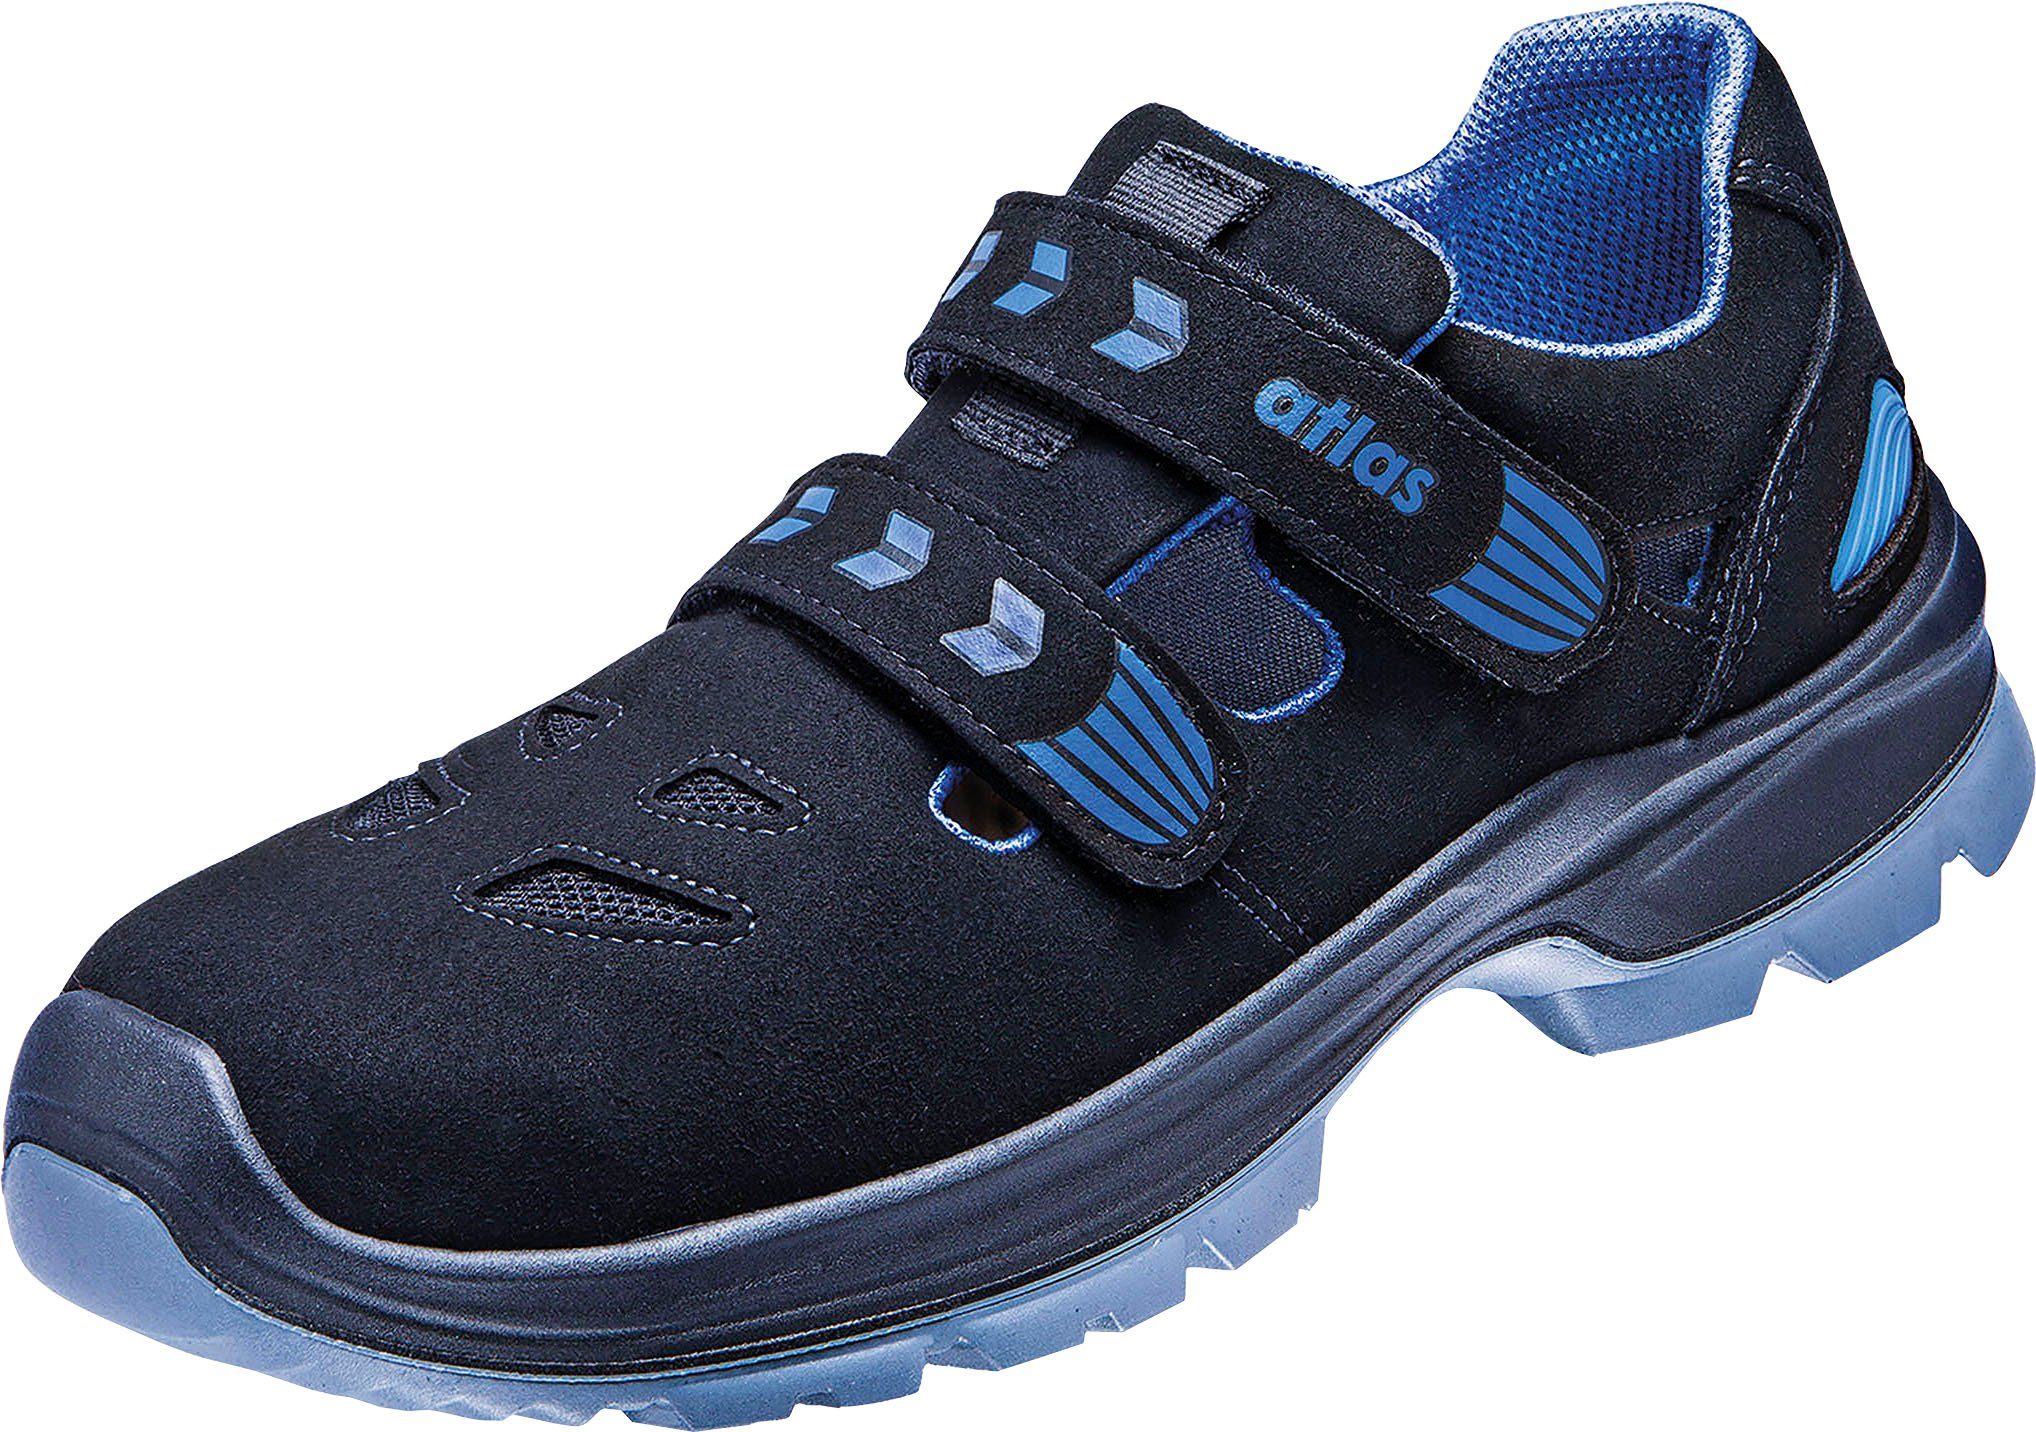 Atlas Schuhe Ergo-Med 360 Sicherheitsschuh Sandale, Schuhweite 12, Sicherheitsklasse S1